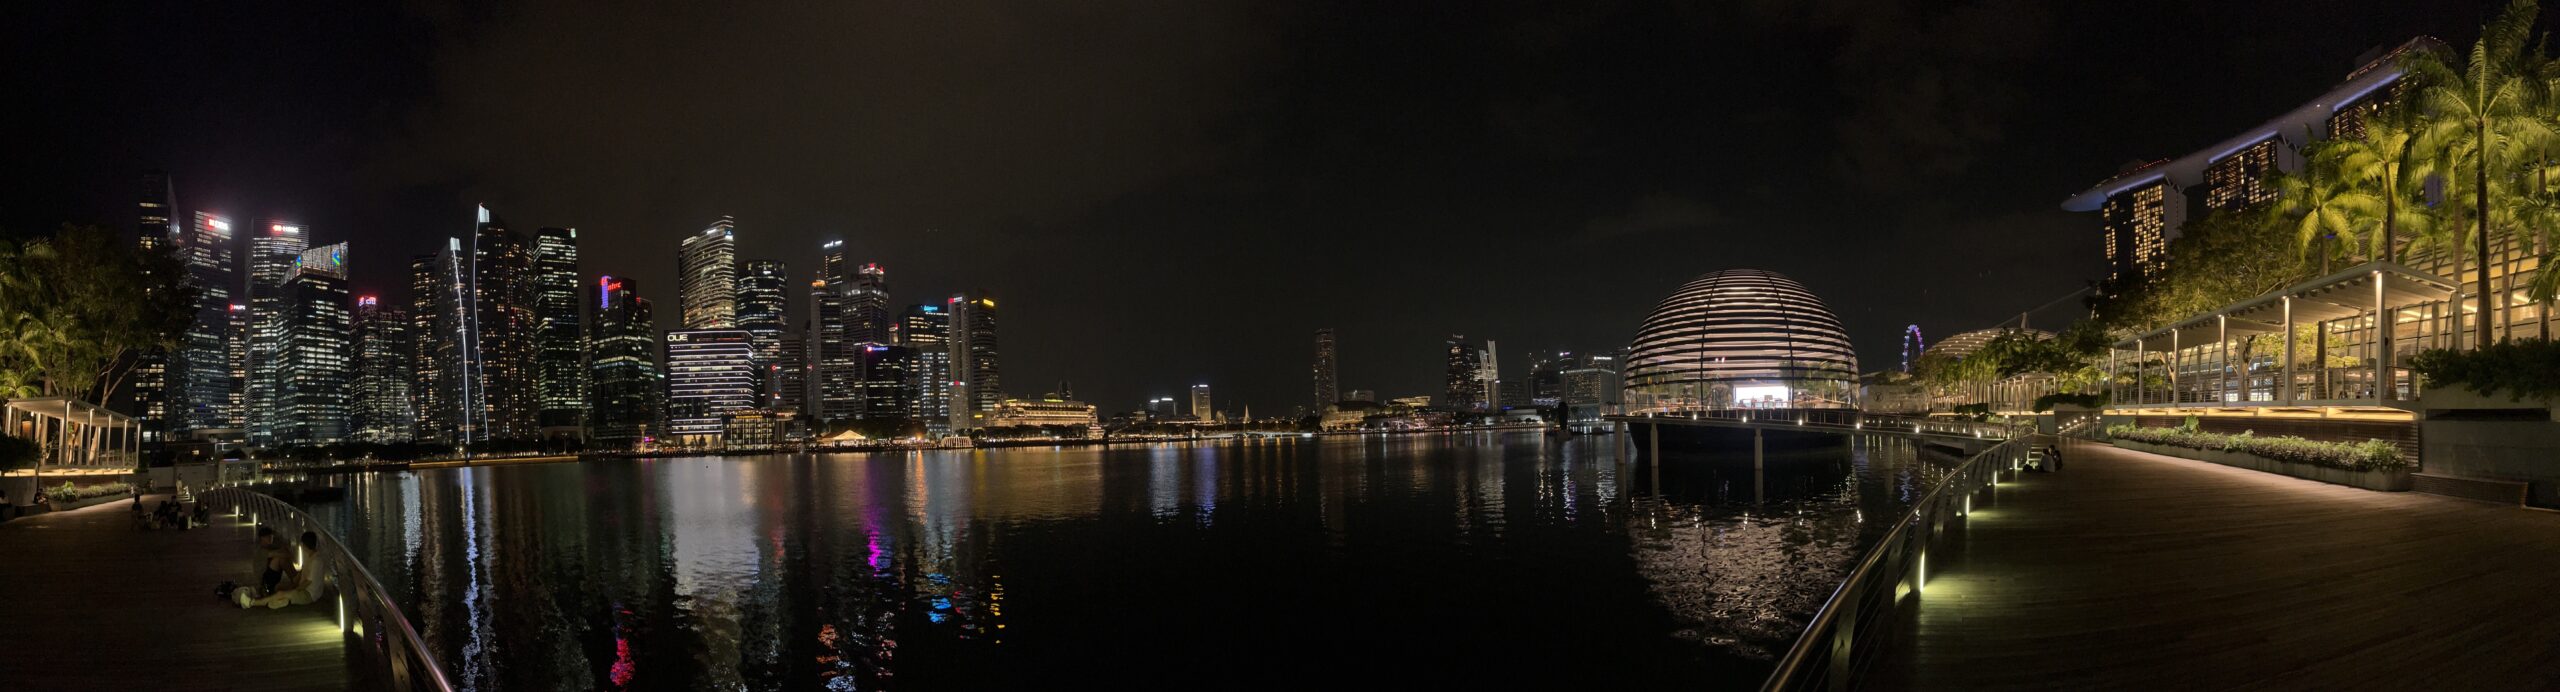 Bild: Skyline von Singapur bei Nacht